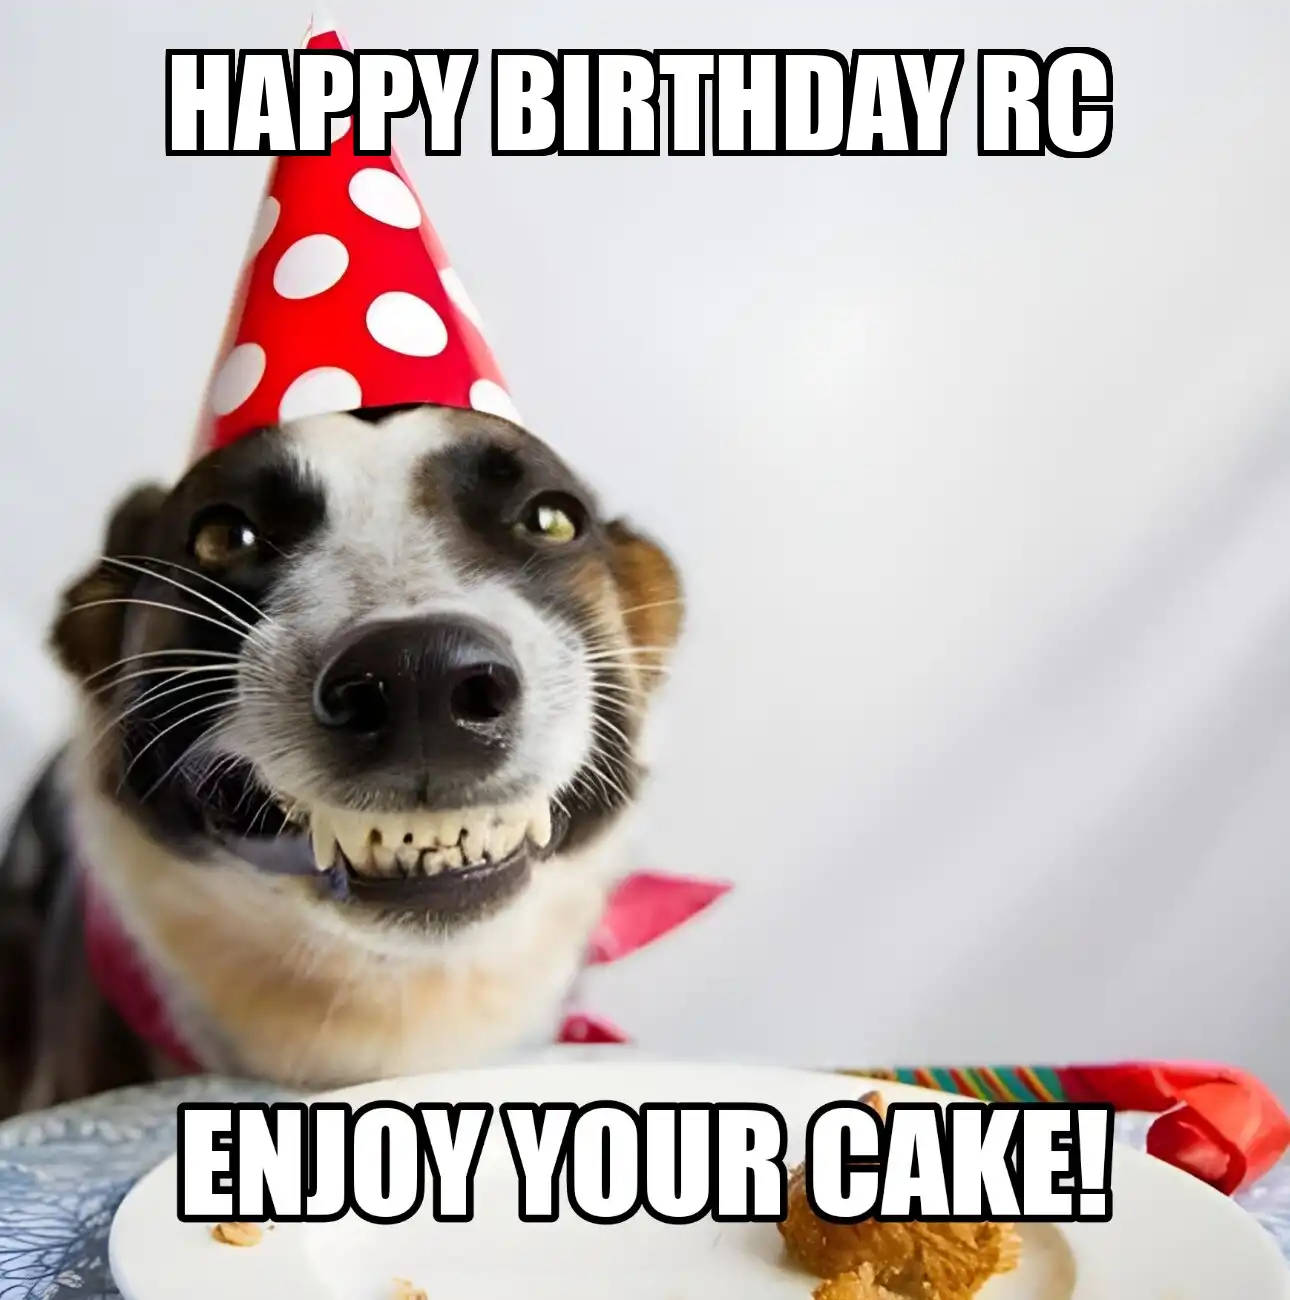 Happy Birthday Rc Enjoy Your Cake Dog Meme